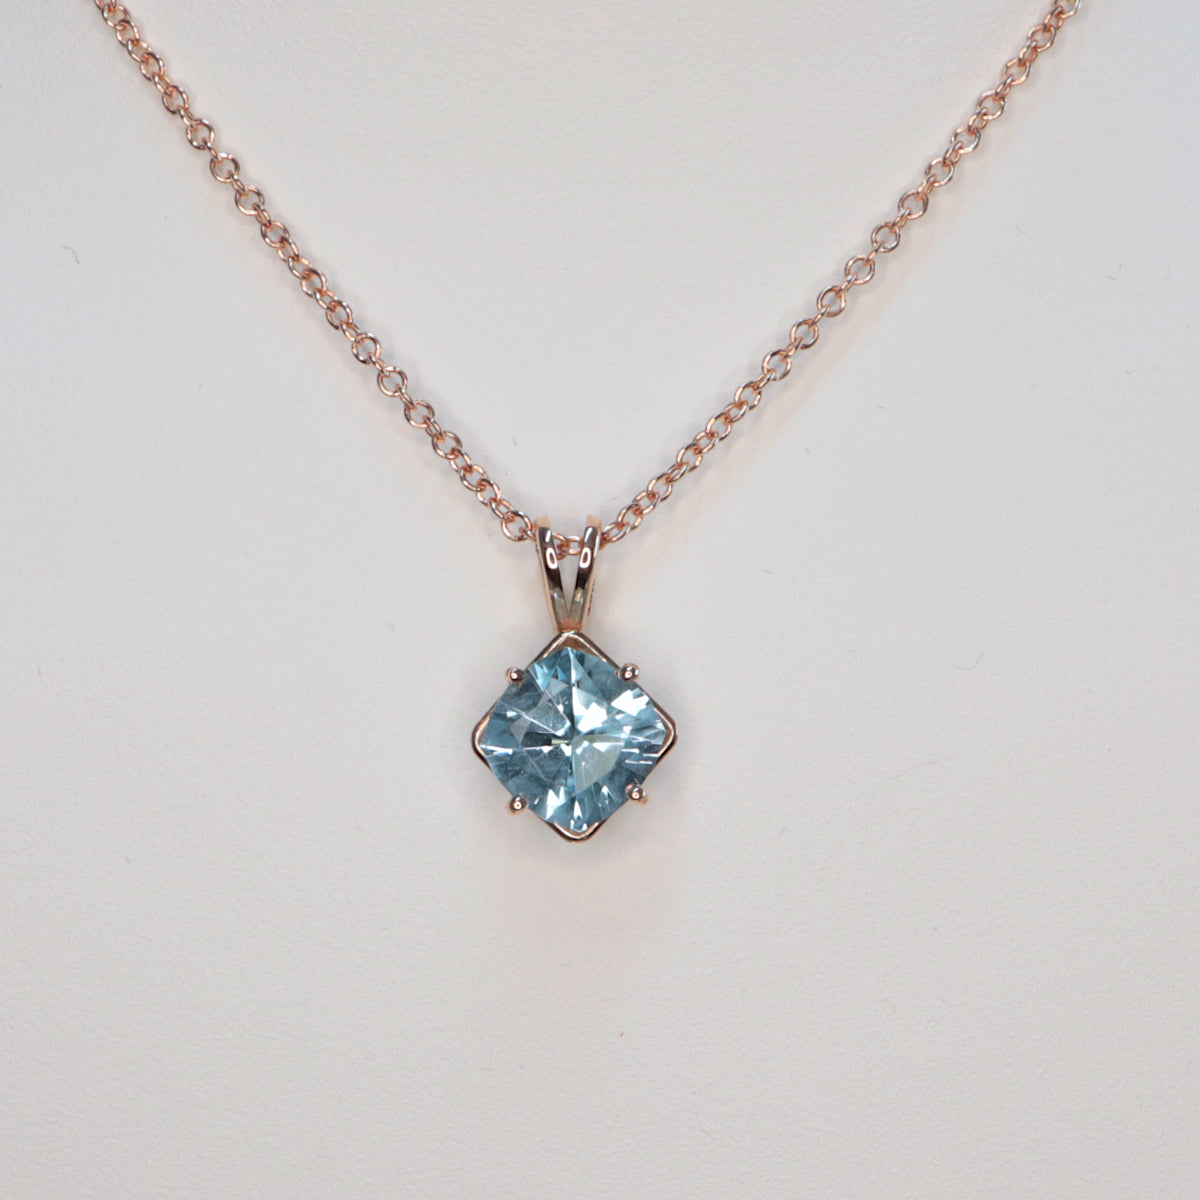 2.5ct Blue Topaz necklace / 14K Rose Gold